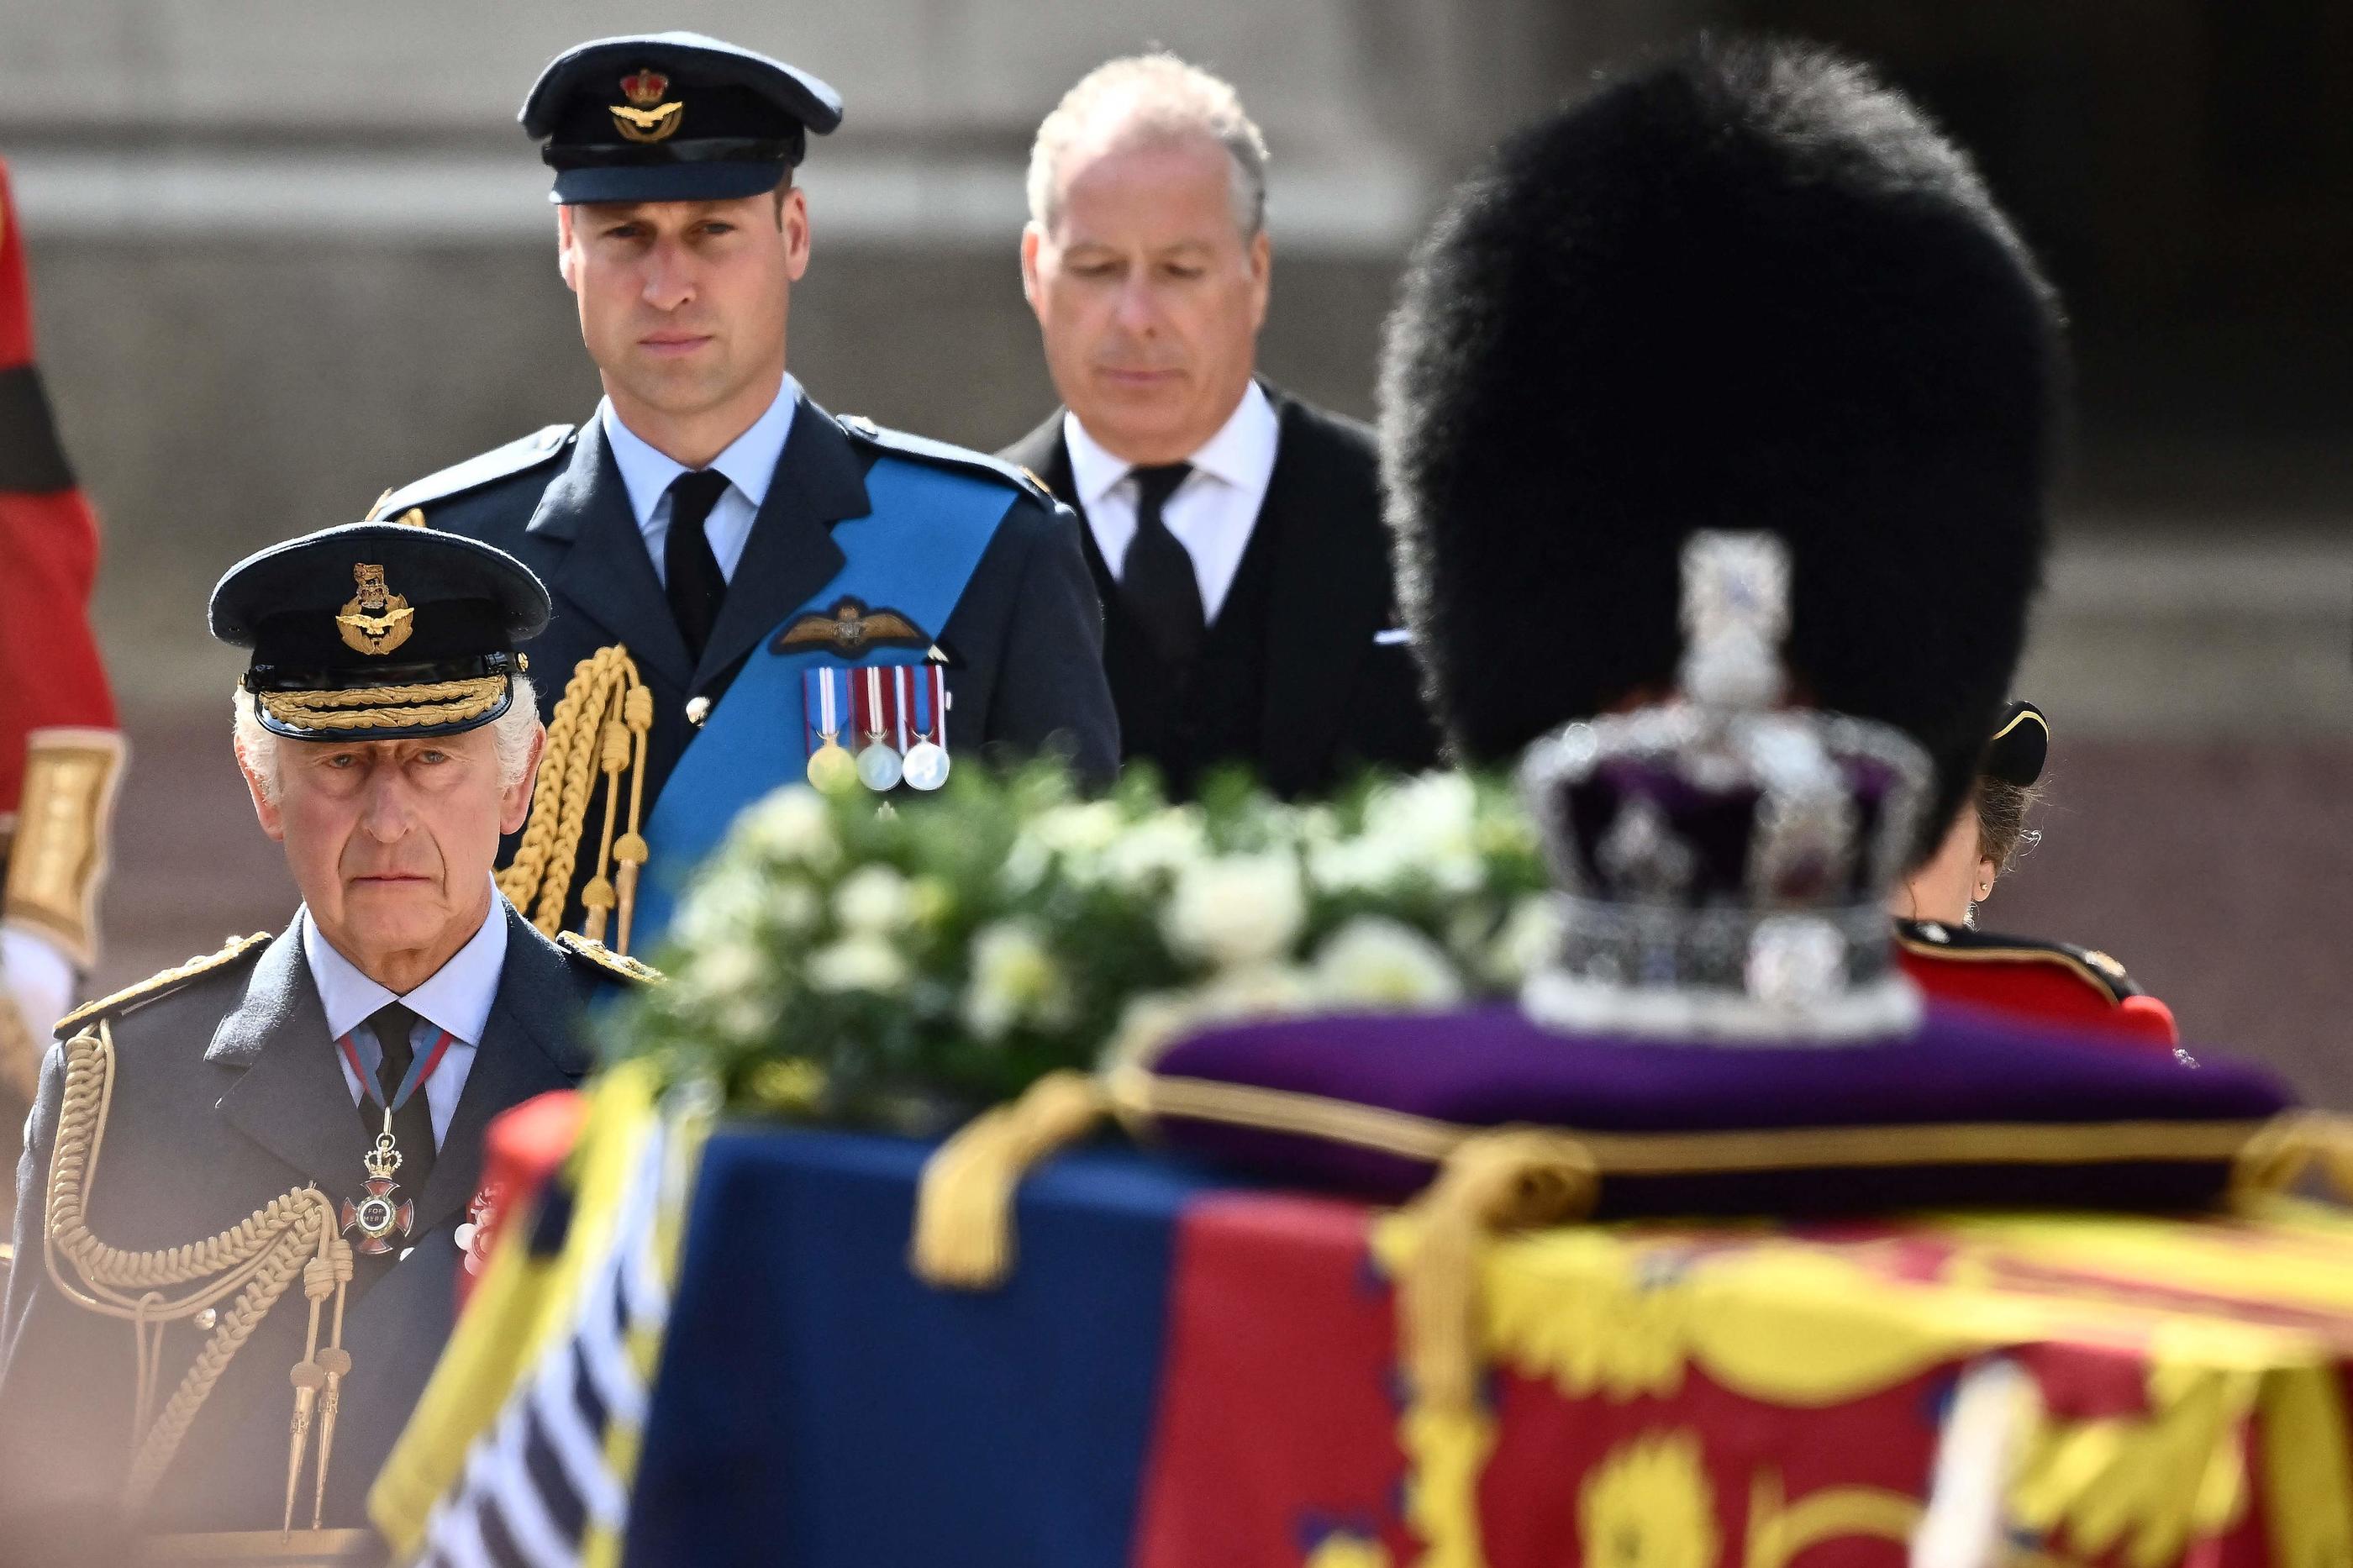 La procession royale a amené le cercueil d'Elizabeth II de Buckingham Palace à Westminster Hall. AFP/Marco BERTORELLO